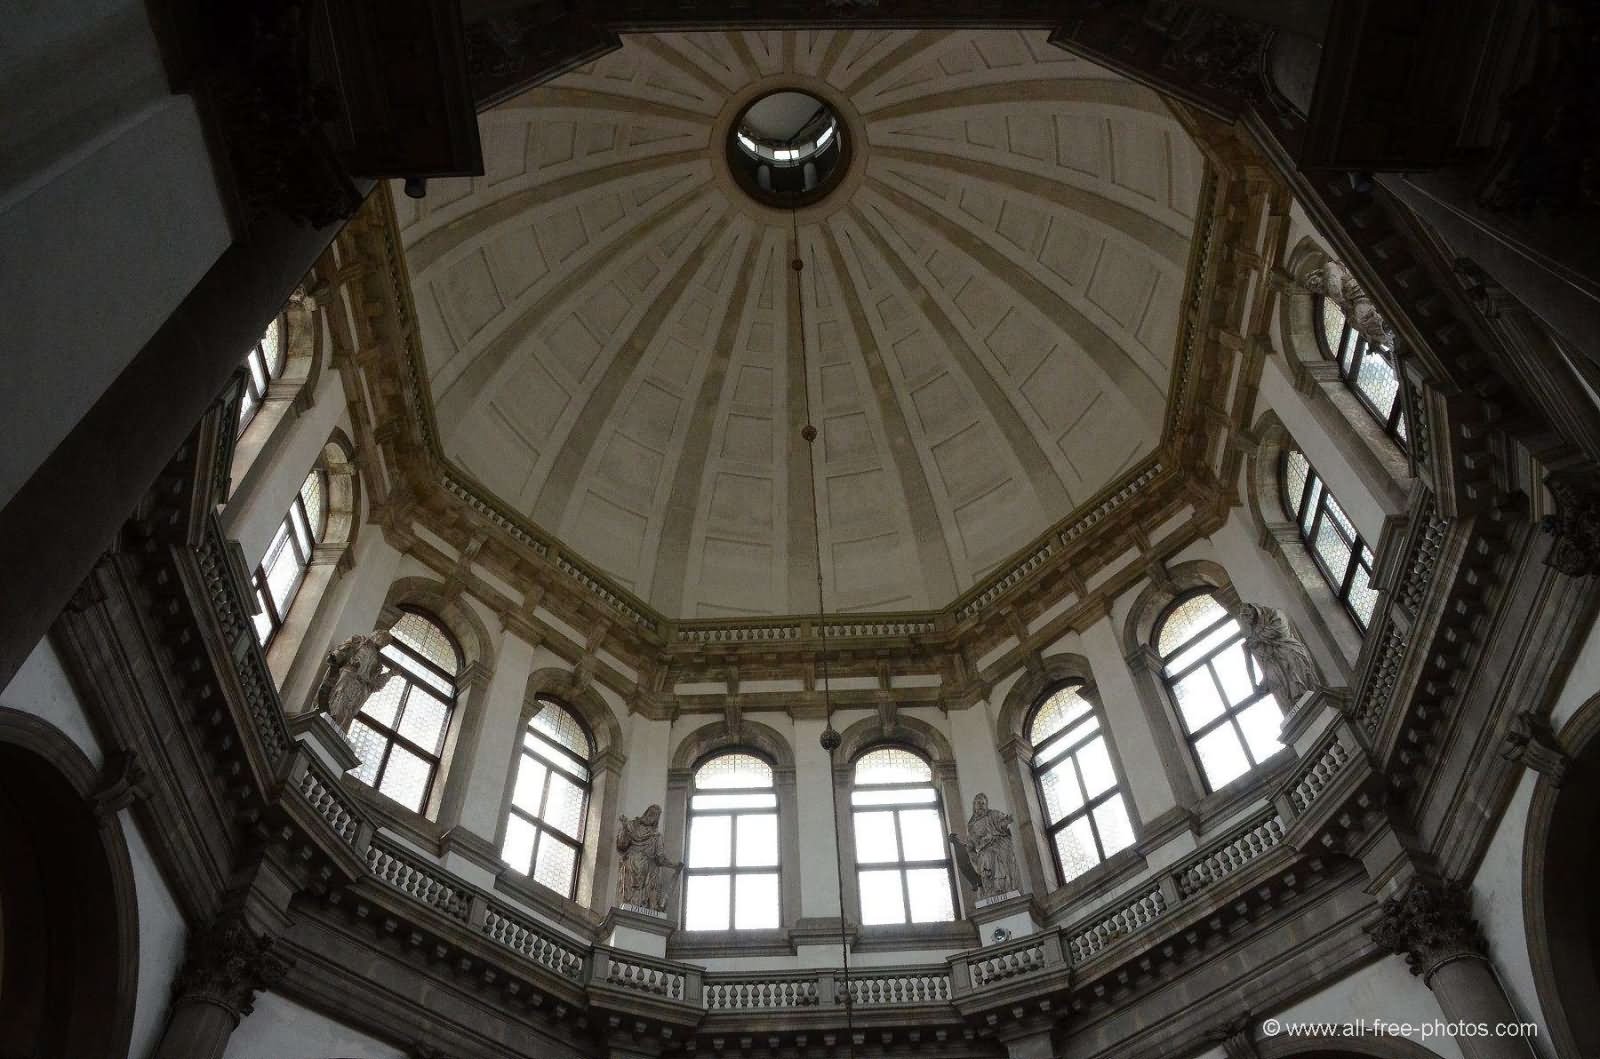 Beautiful Dome Inside The Santa Maria della Salute